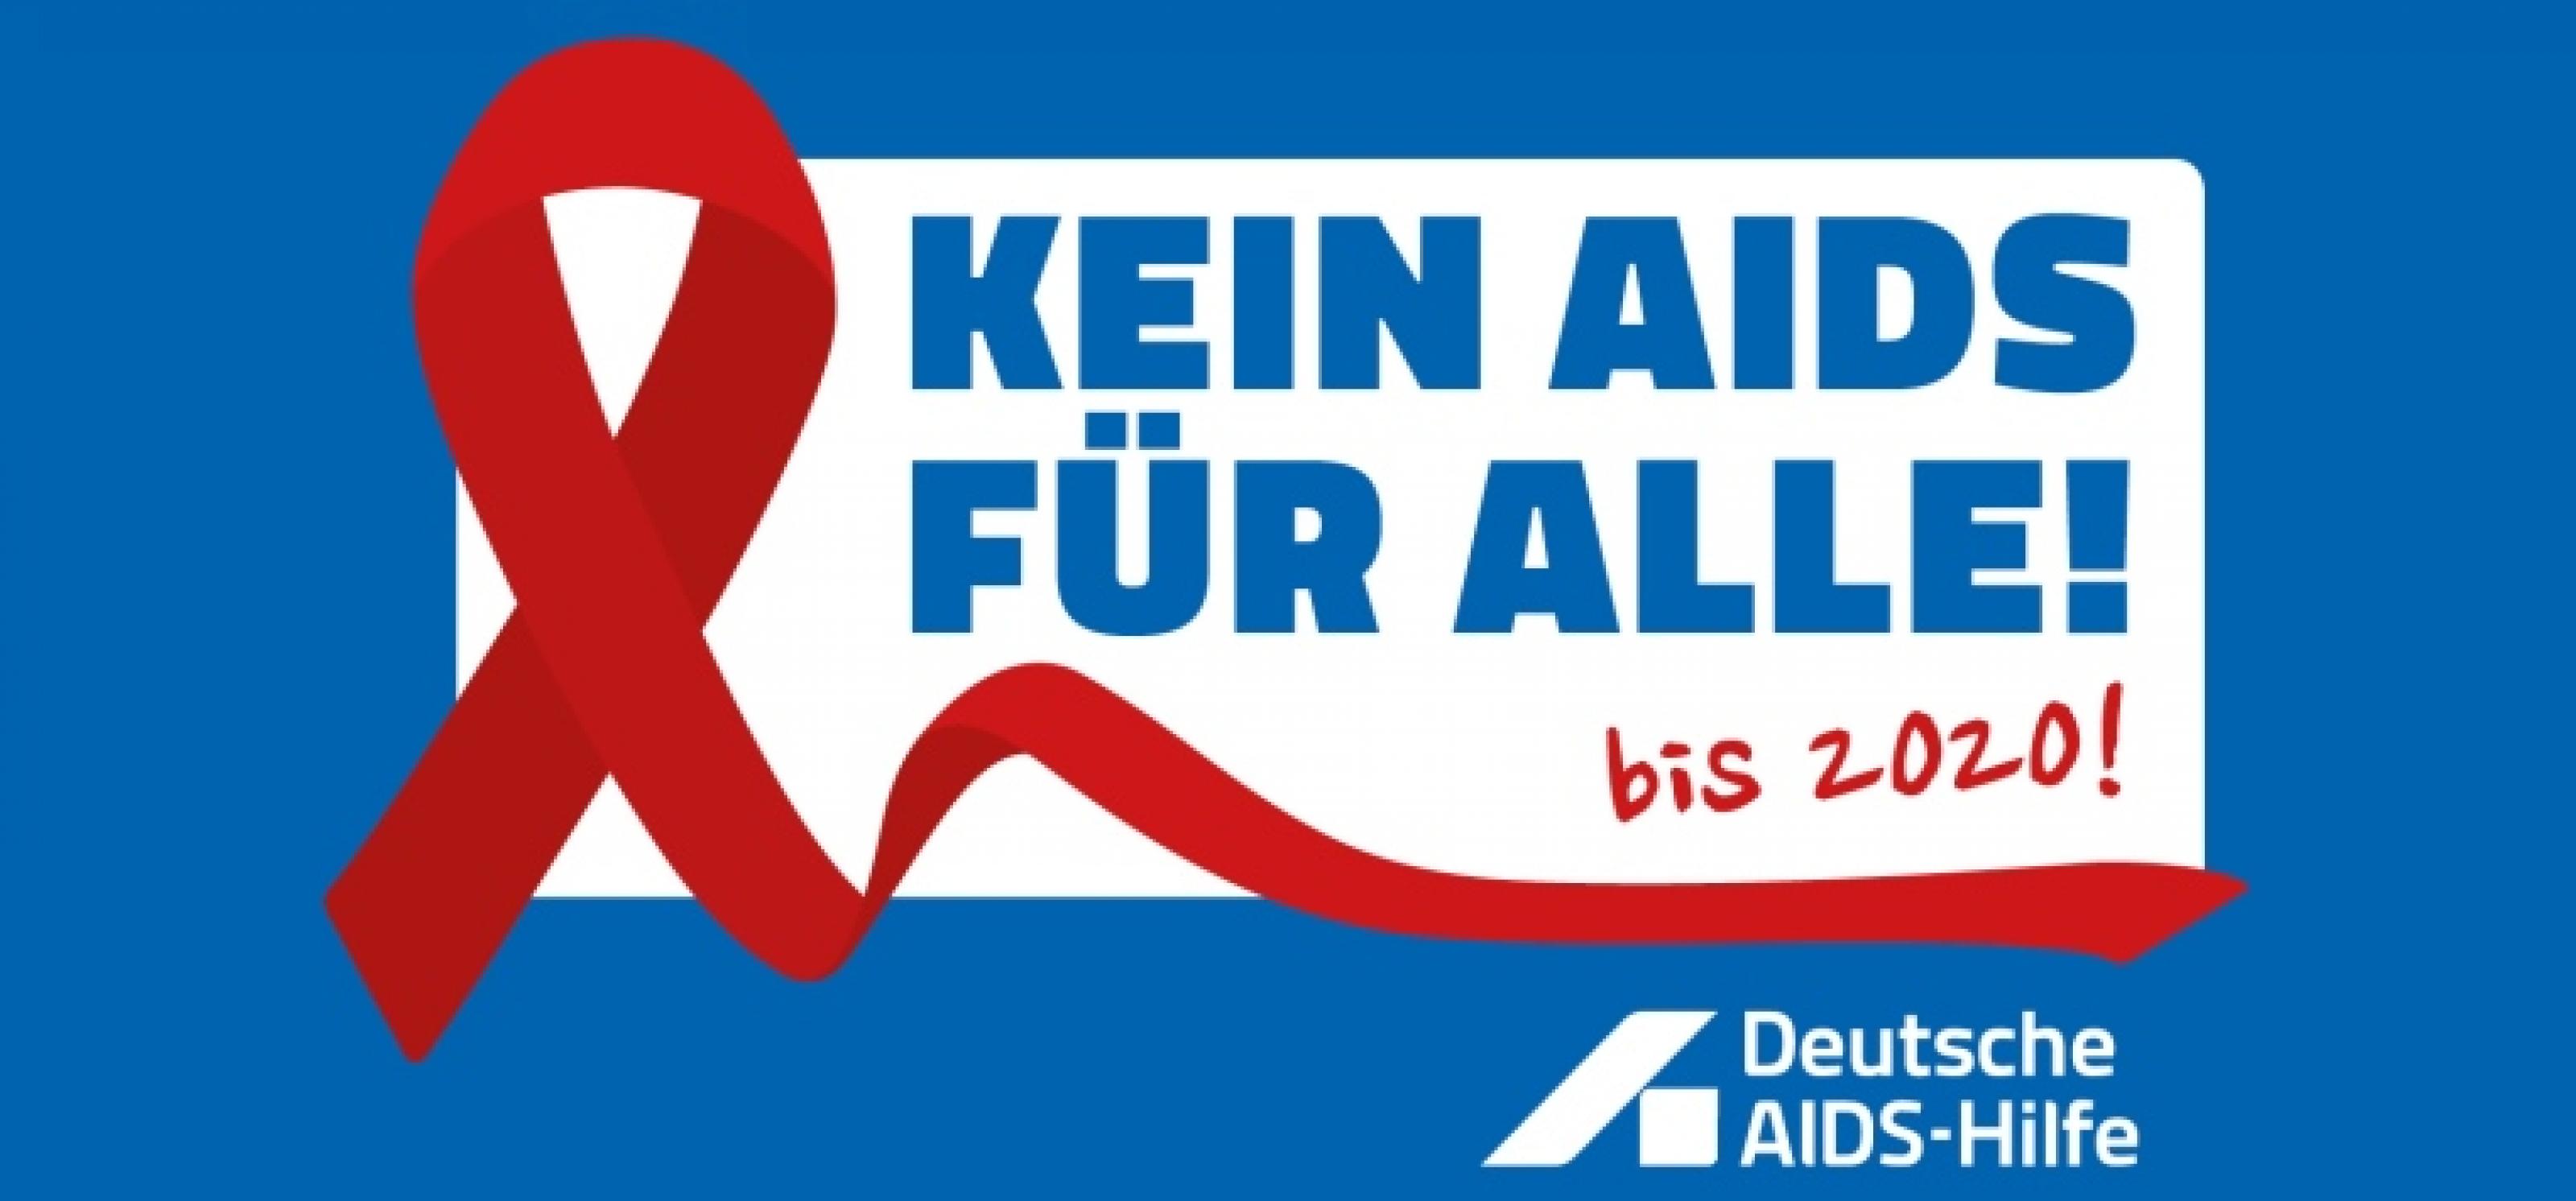 Ein weißer Kasten auf blauem Hintergrund mit dem Text: Kein Aids für alle! Bis 2020! Daneben eine rote AIds-Schleife, darunter der Schriftzug der Deutschen AIDS-Hilfe in weiß